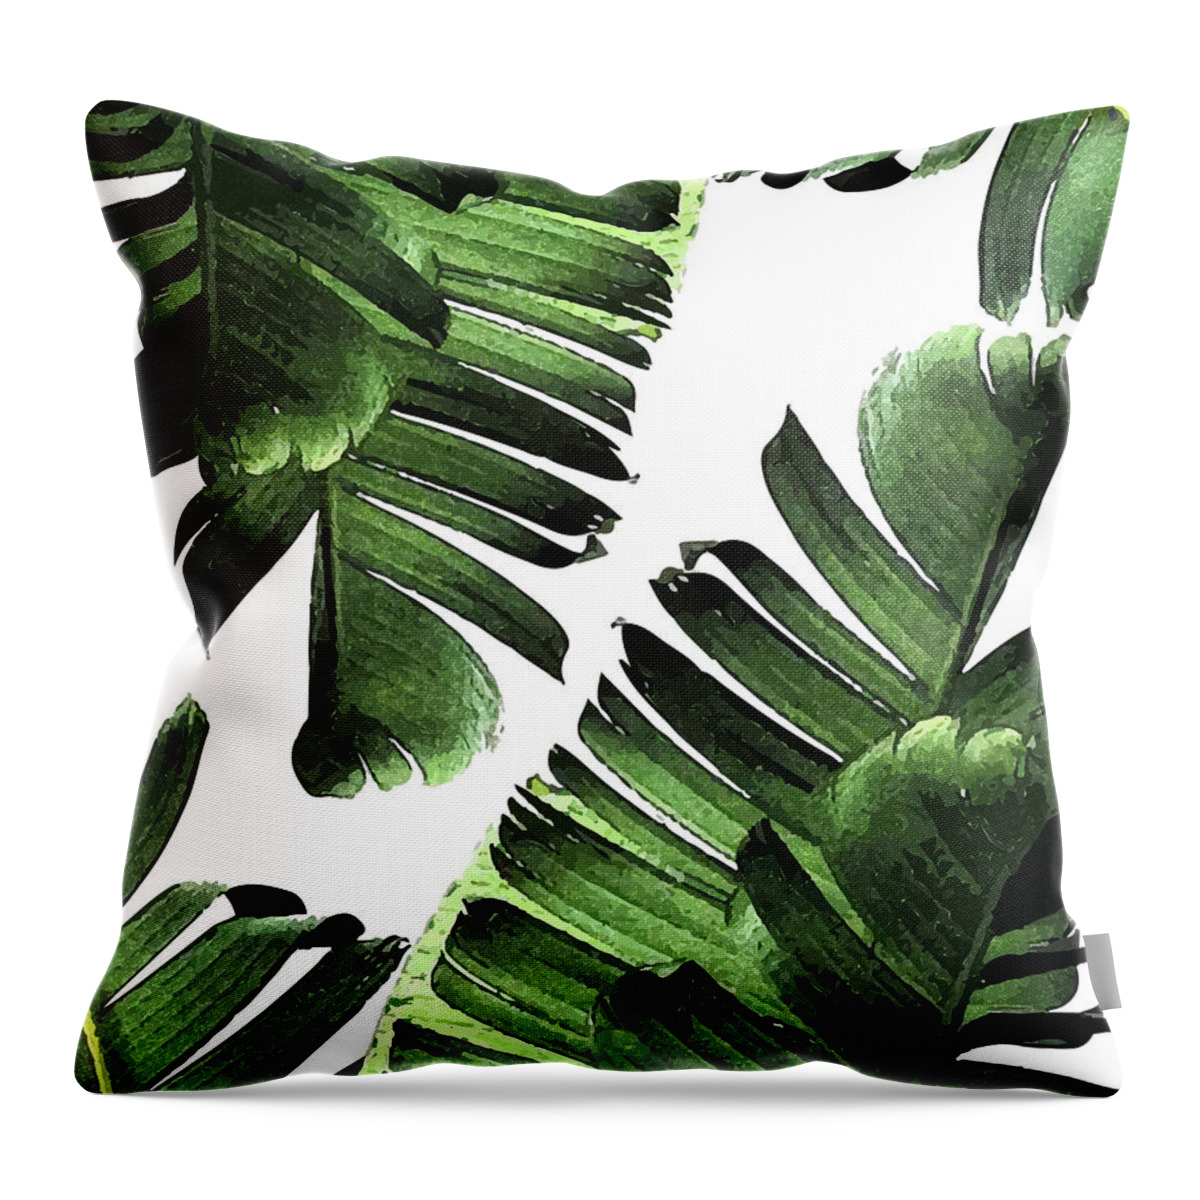 Banana Leaf - Tropical Leaf Print - Botanical Art - Modern Abstract -  Green, Olive by Studio Grafiikka